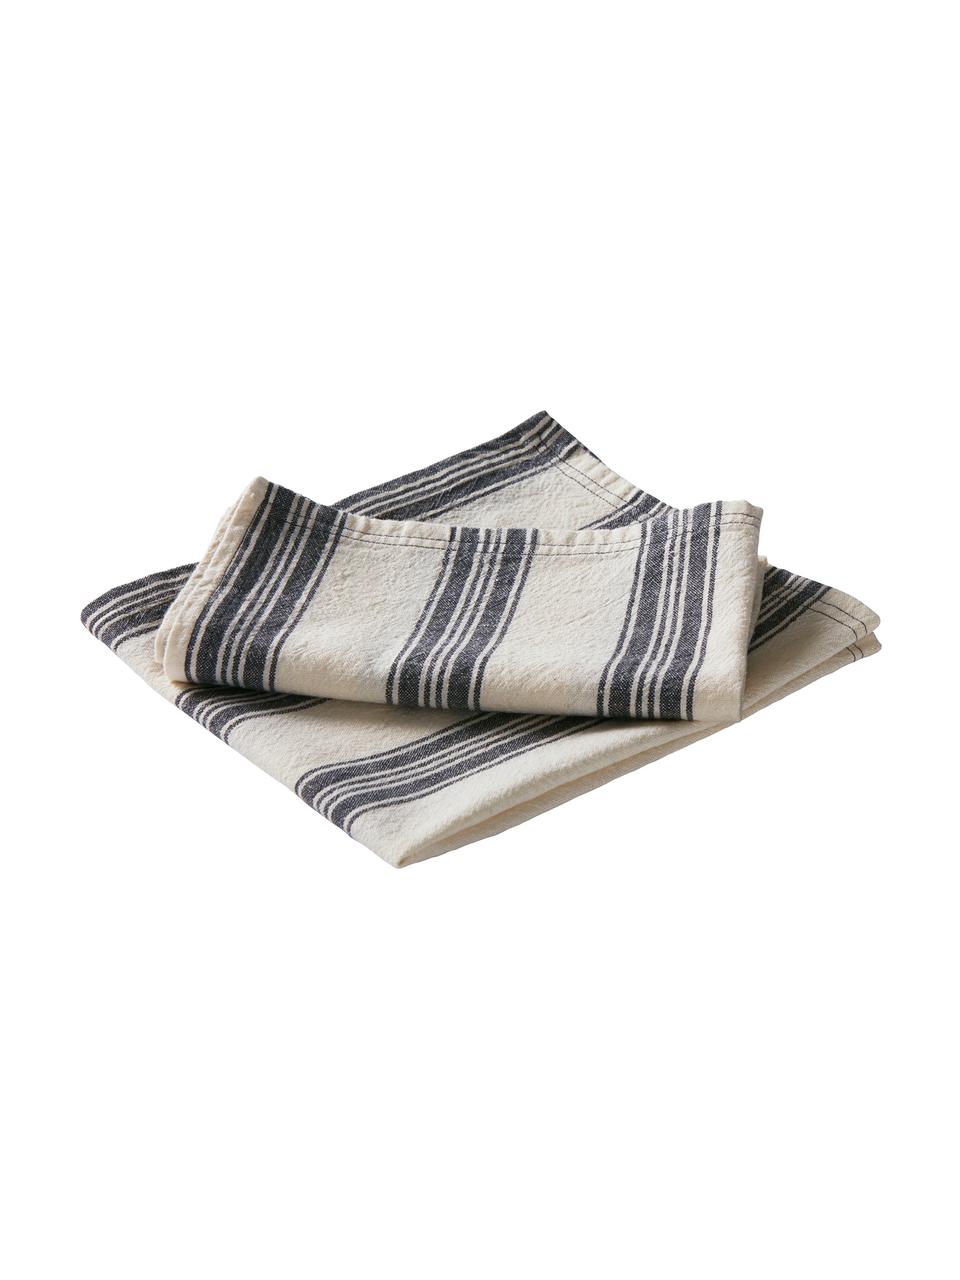 Serviettes de table en coton/lin Abigail, 2 pièces, Blanc cassé, bleu